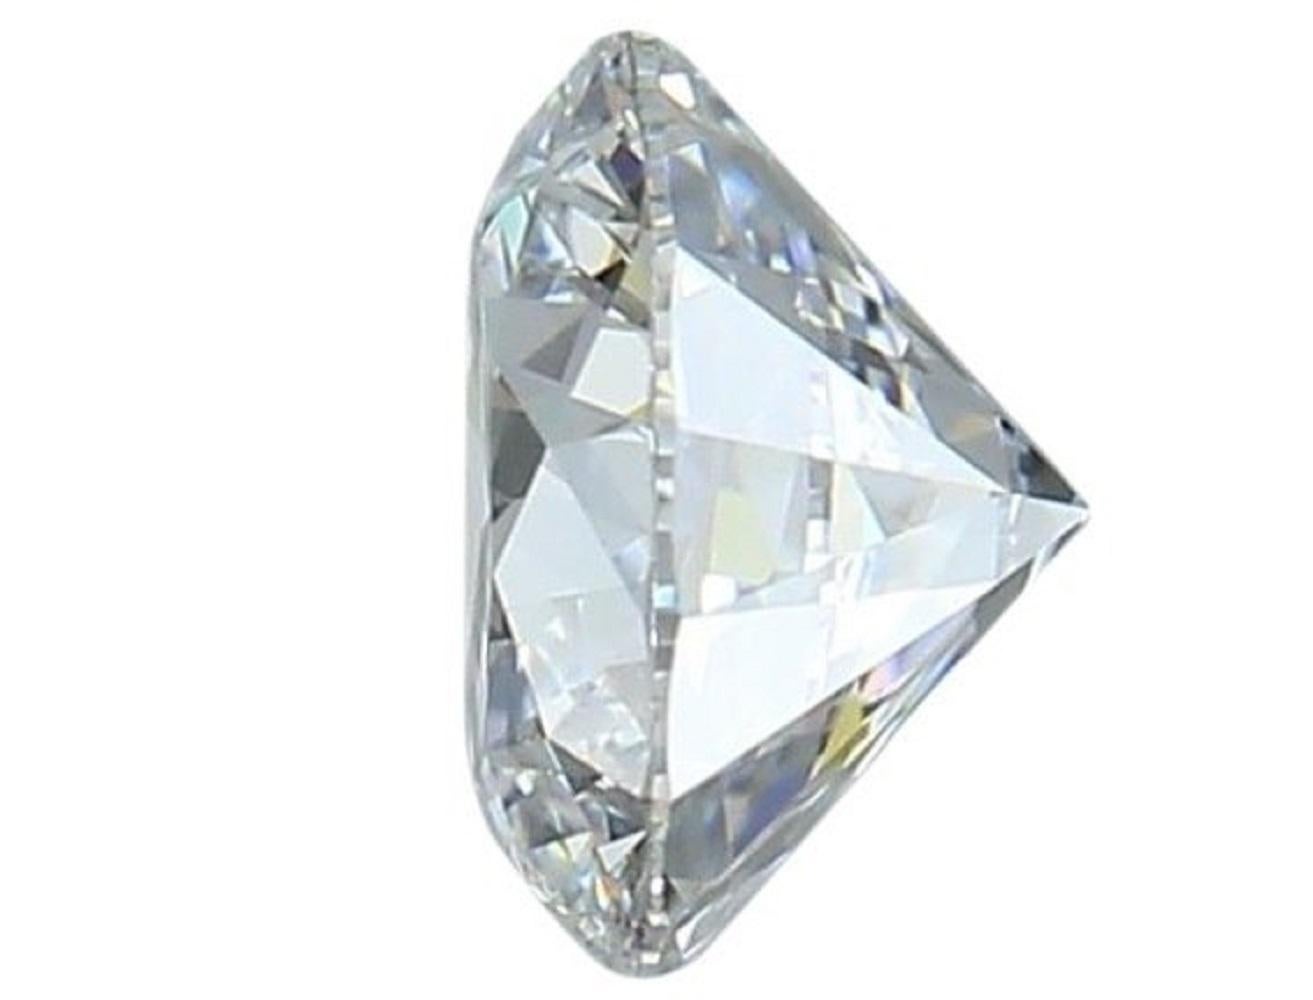 1 funkelnder natürlicher runder Diamant im Brillantschliff von 2,34 Karat E VVS2 mit ausgezeichnetem Schliff. Dieser Diamant wird mit IGI-Zertifikat und Laserbeschriftungsnummer geliefert.

SKU: 172553
IGI 553249159